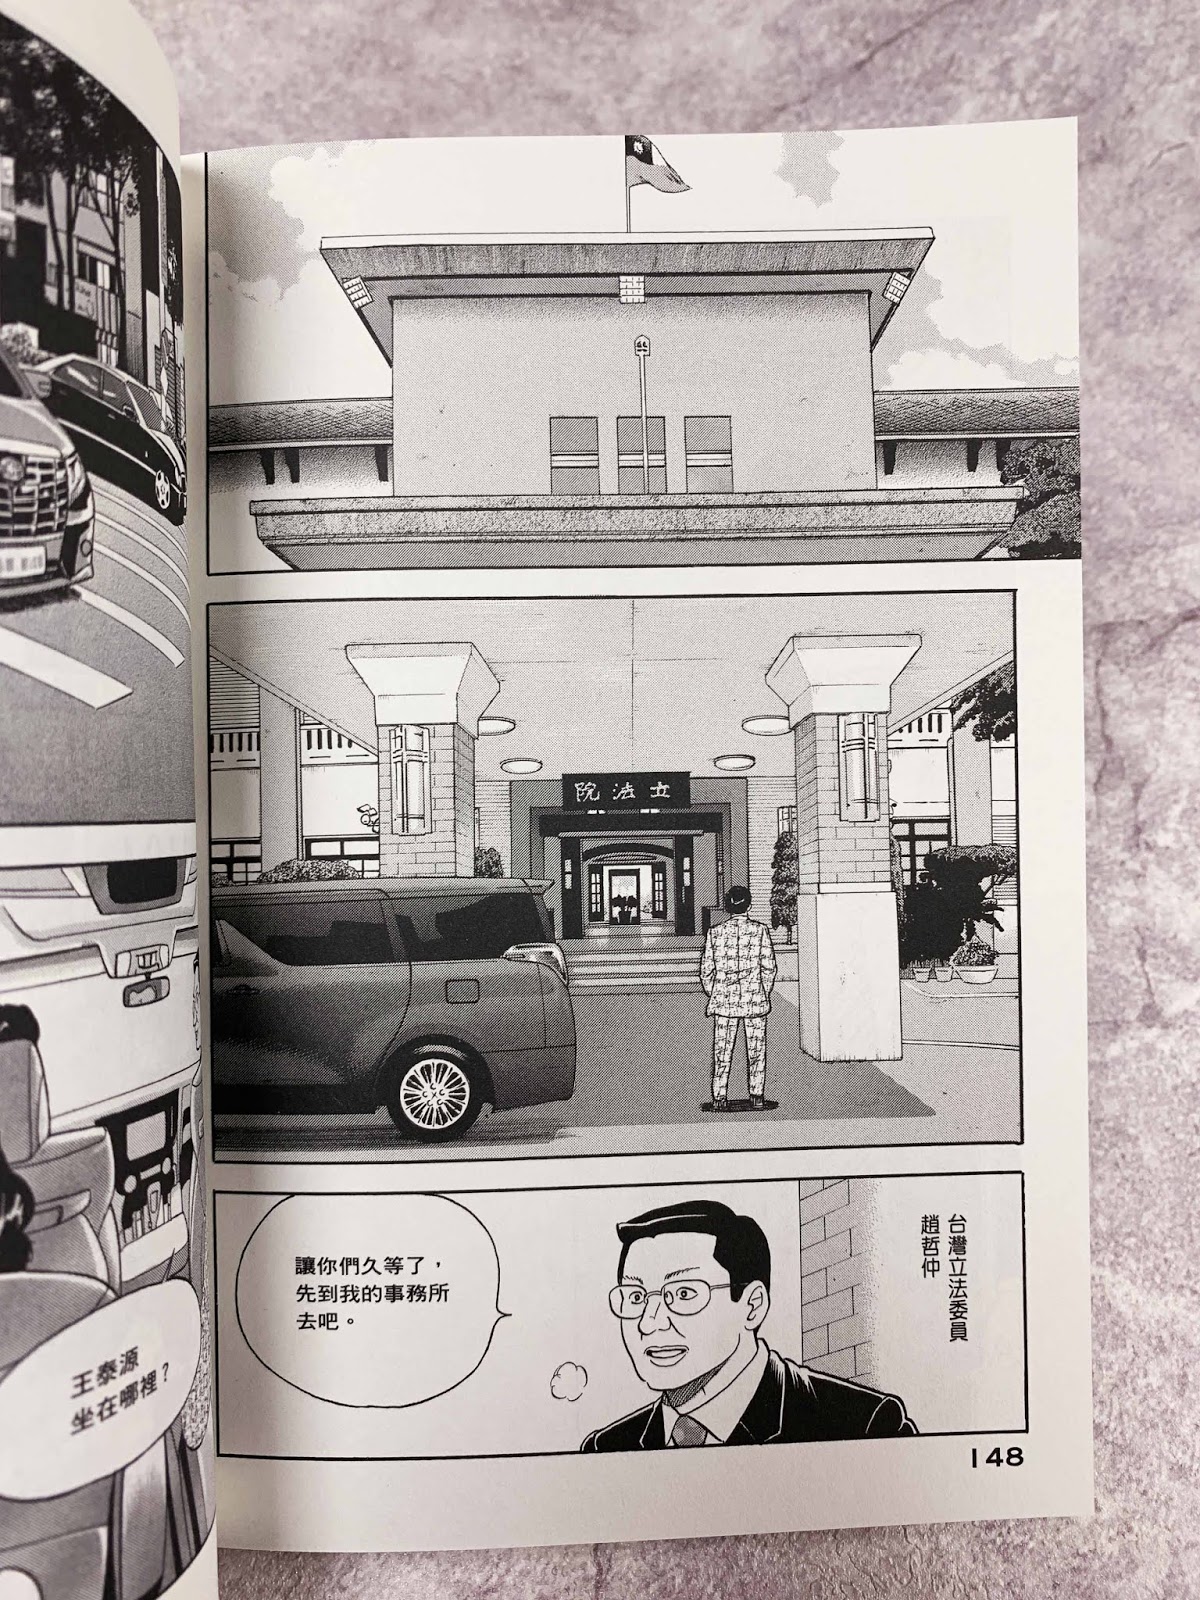 史上最 臺 日本漫畫 會長島耕作 從101畫到高鐵左營站 紀由屋 Kikyus